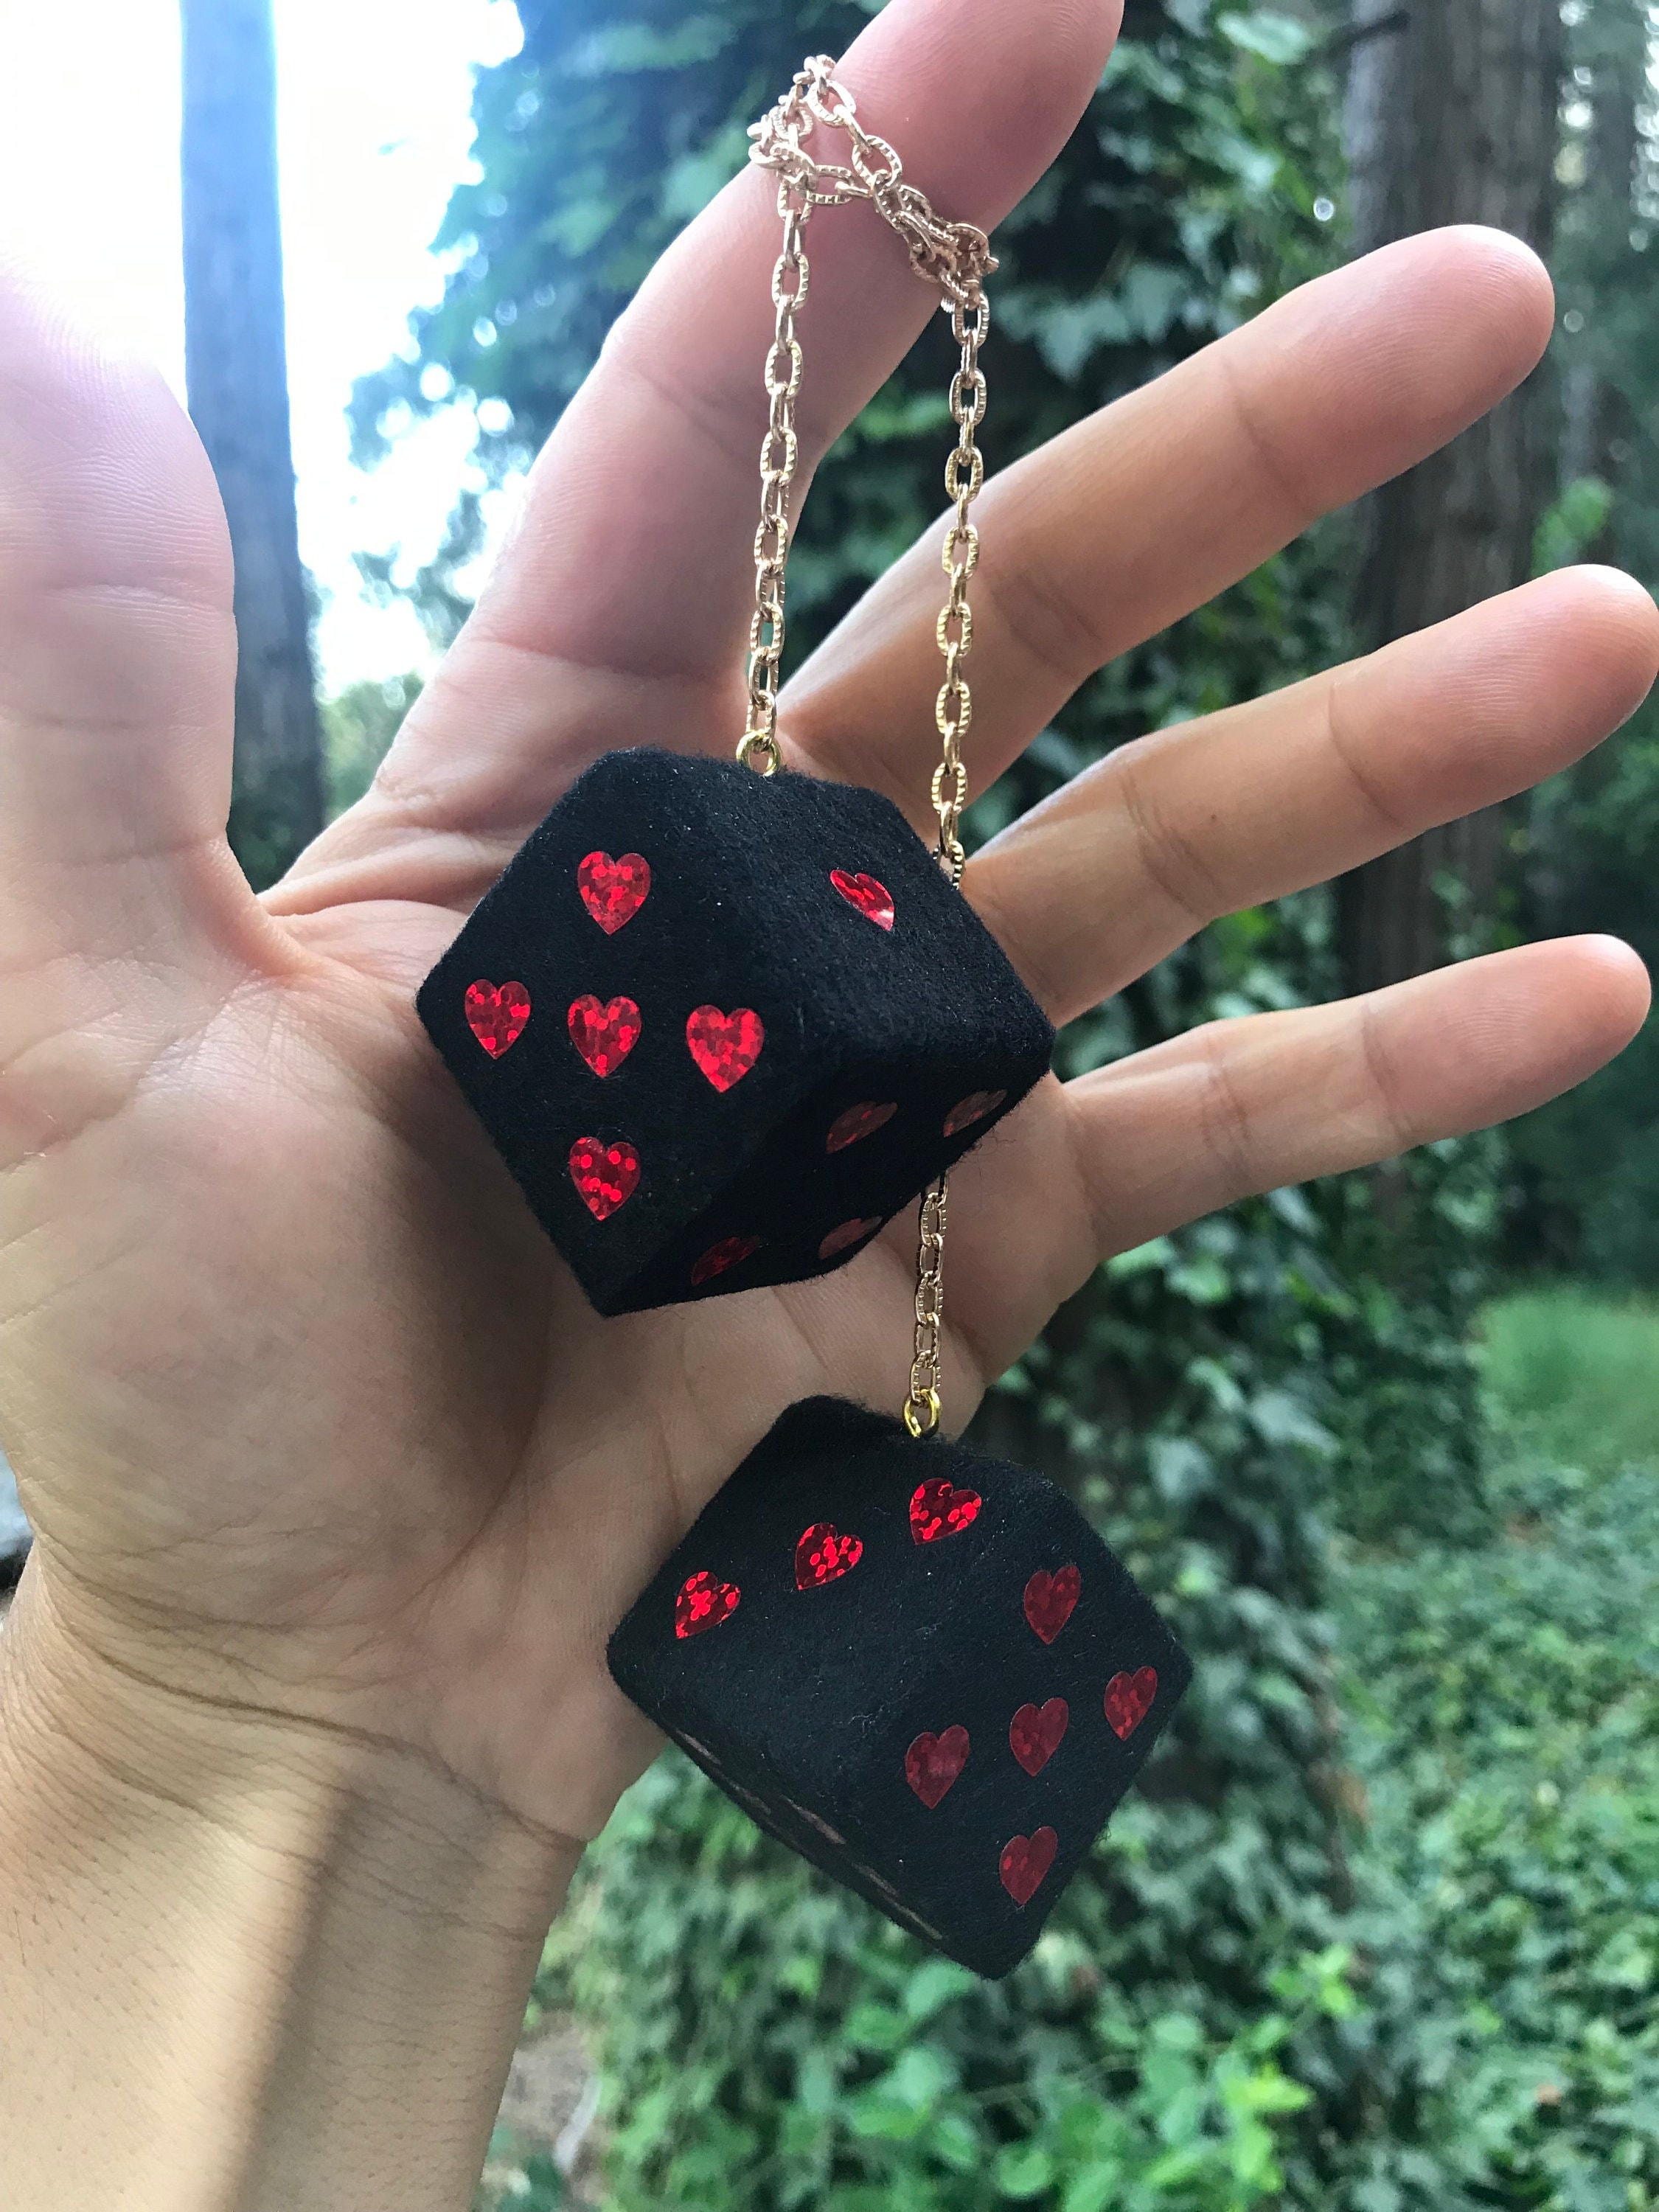 Schwarzer Fuzzy-Würfel mit roten glitzernden Herzen und Kette oder